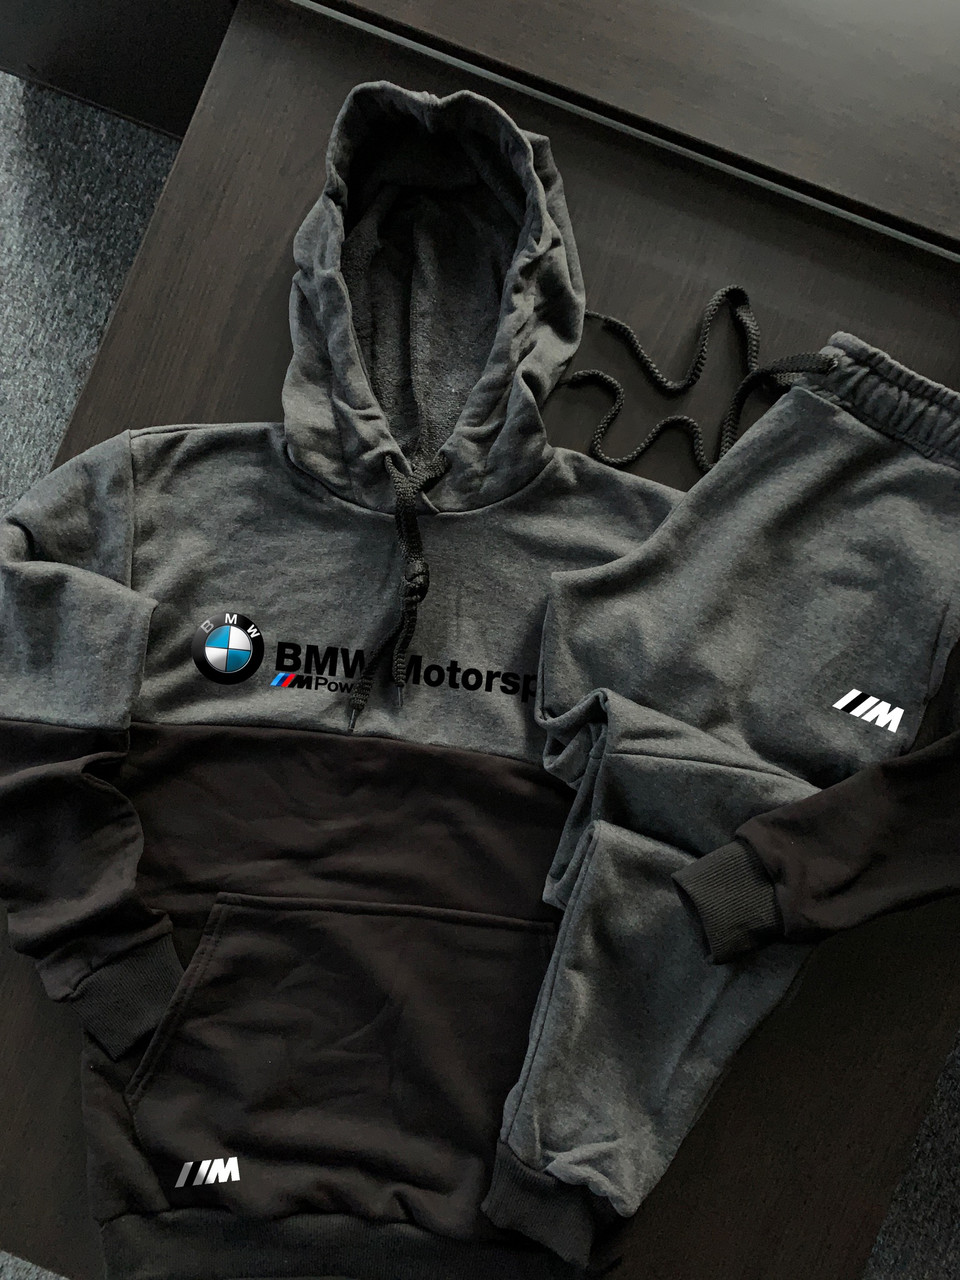 Спортивный костюм мужской BMW Motorsport трехнитка осенний весенний графит | Кофта + Штаны БМВ ЛЮКС качества